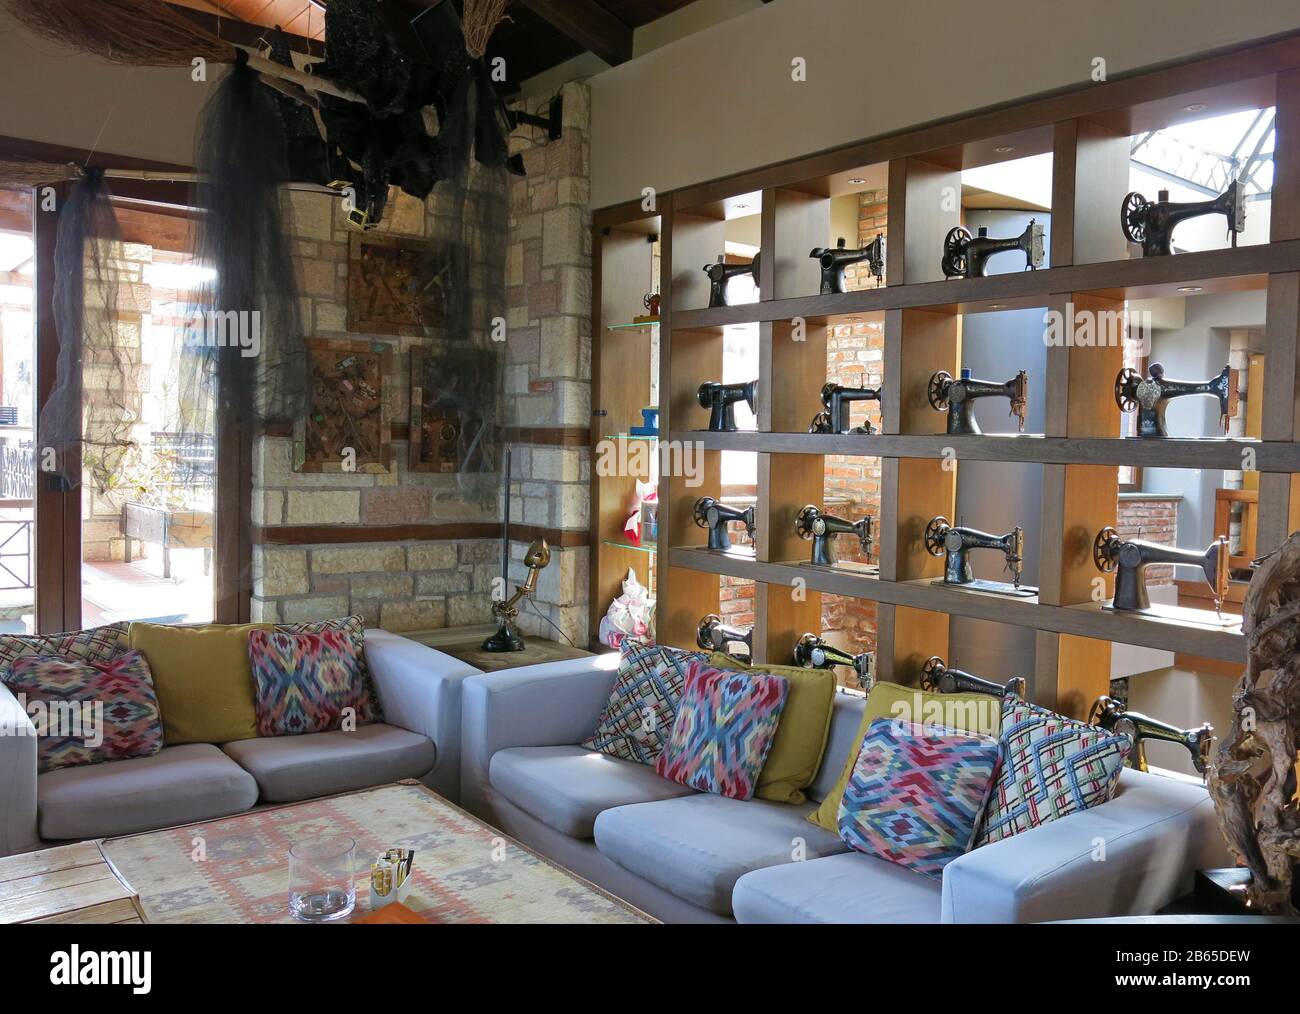 Vista parziale del soggiorno decorato con una collezione di macchine da cucire vintage su una libreria e divani colorati con cuscini. Foto Stock